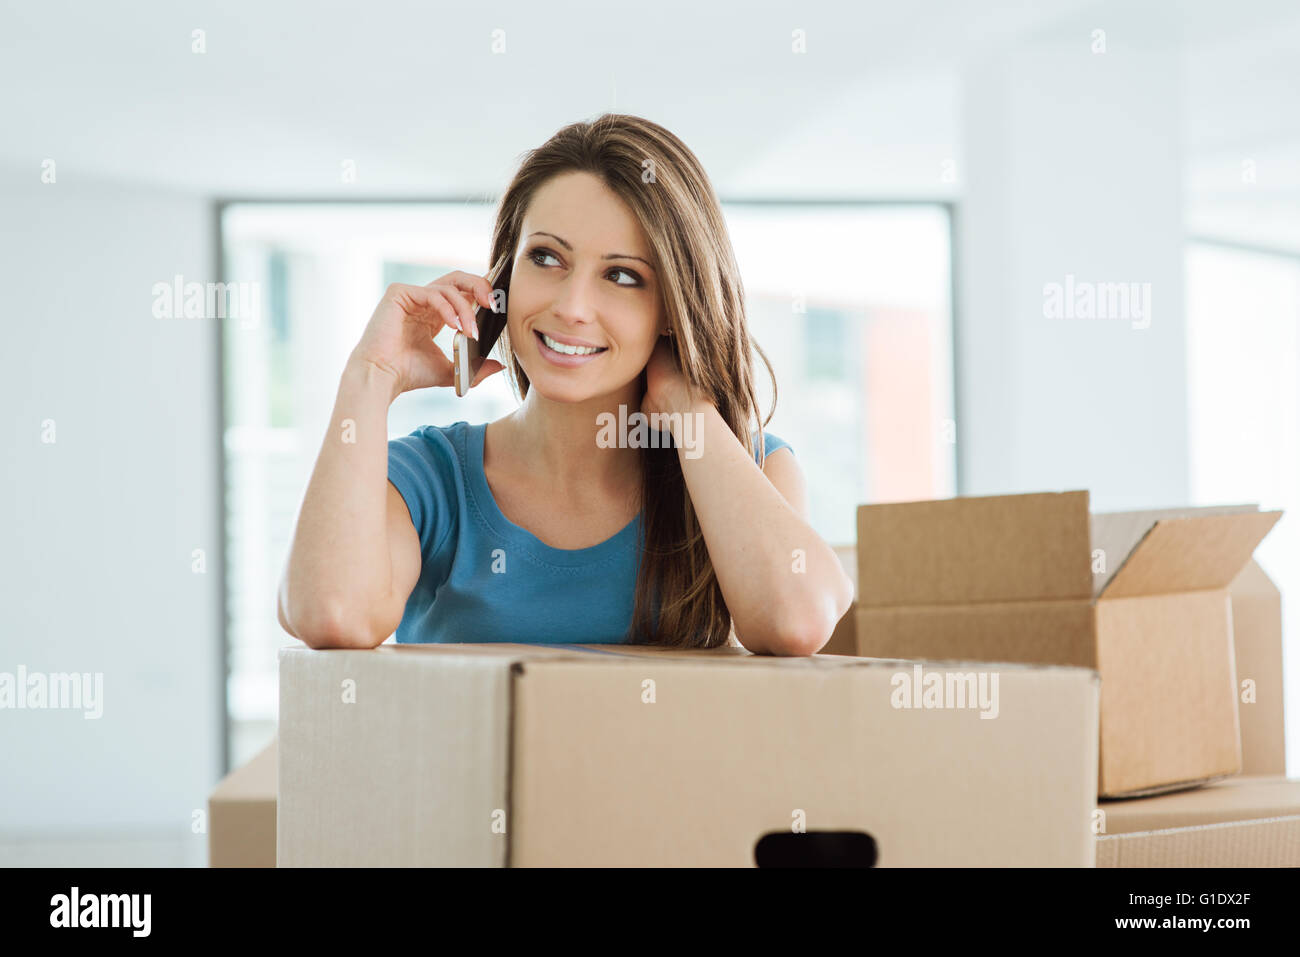 Belle jeune femme ayant un appel téléphonique dans sa nouvelle maison, elle est appuyée sur une boîte de carton Banque D'Images